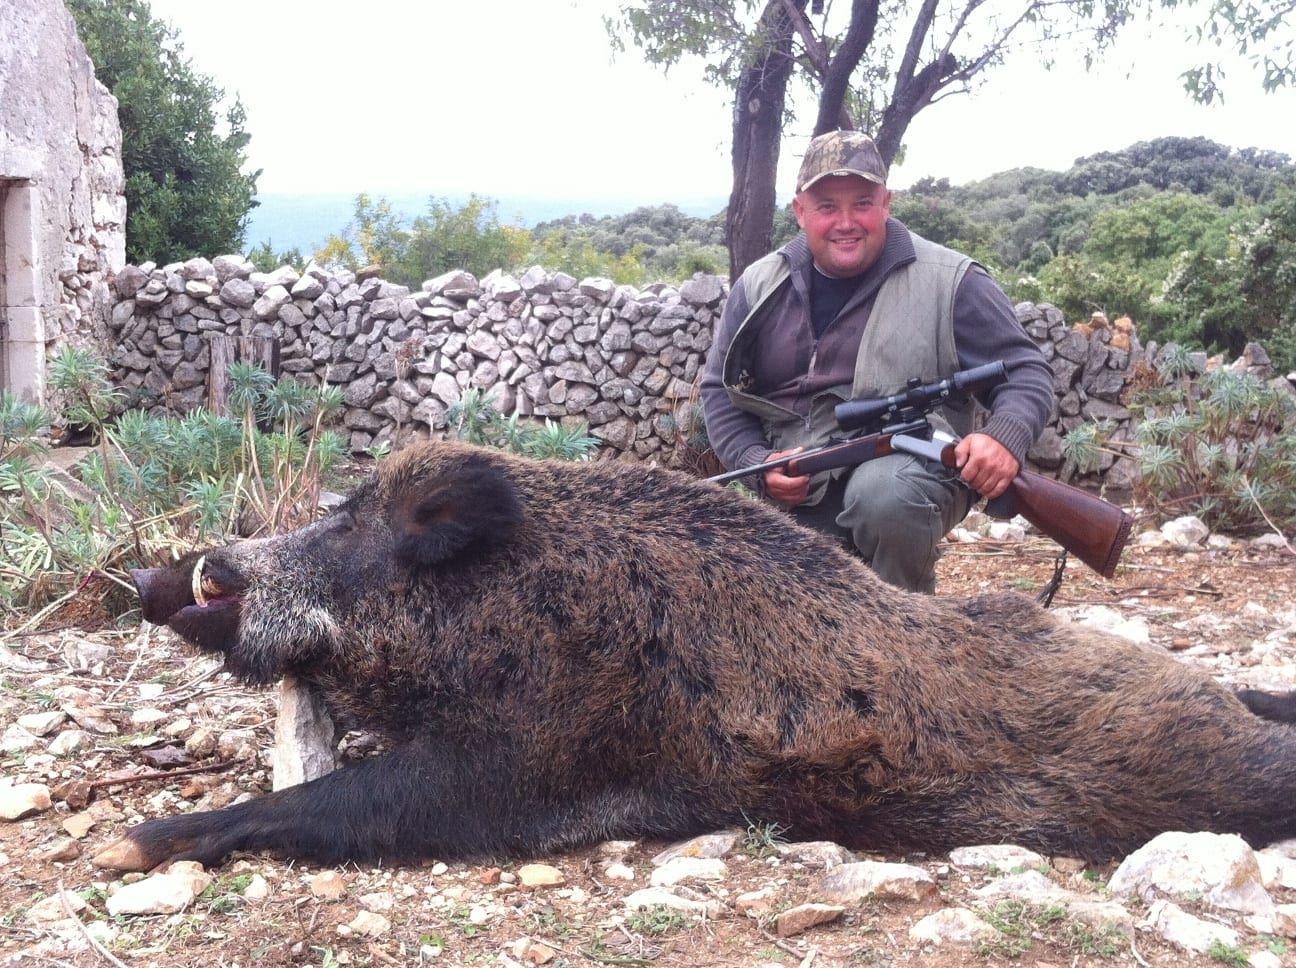 Hunting in Croatia